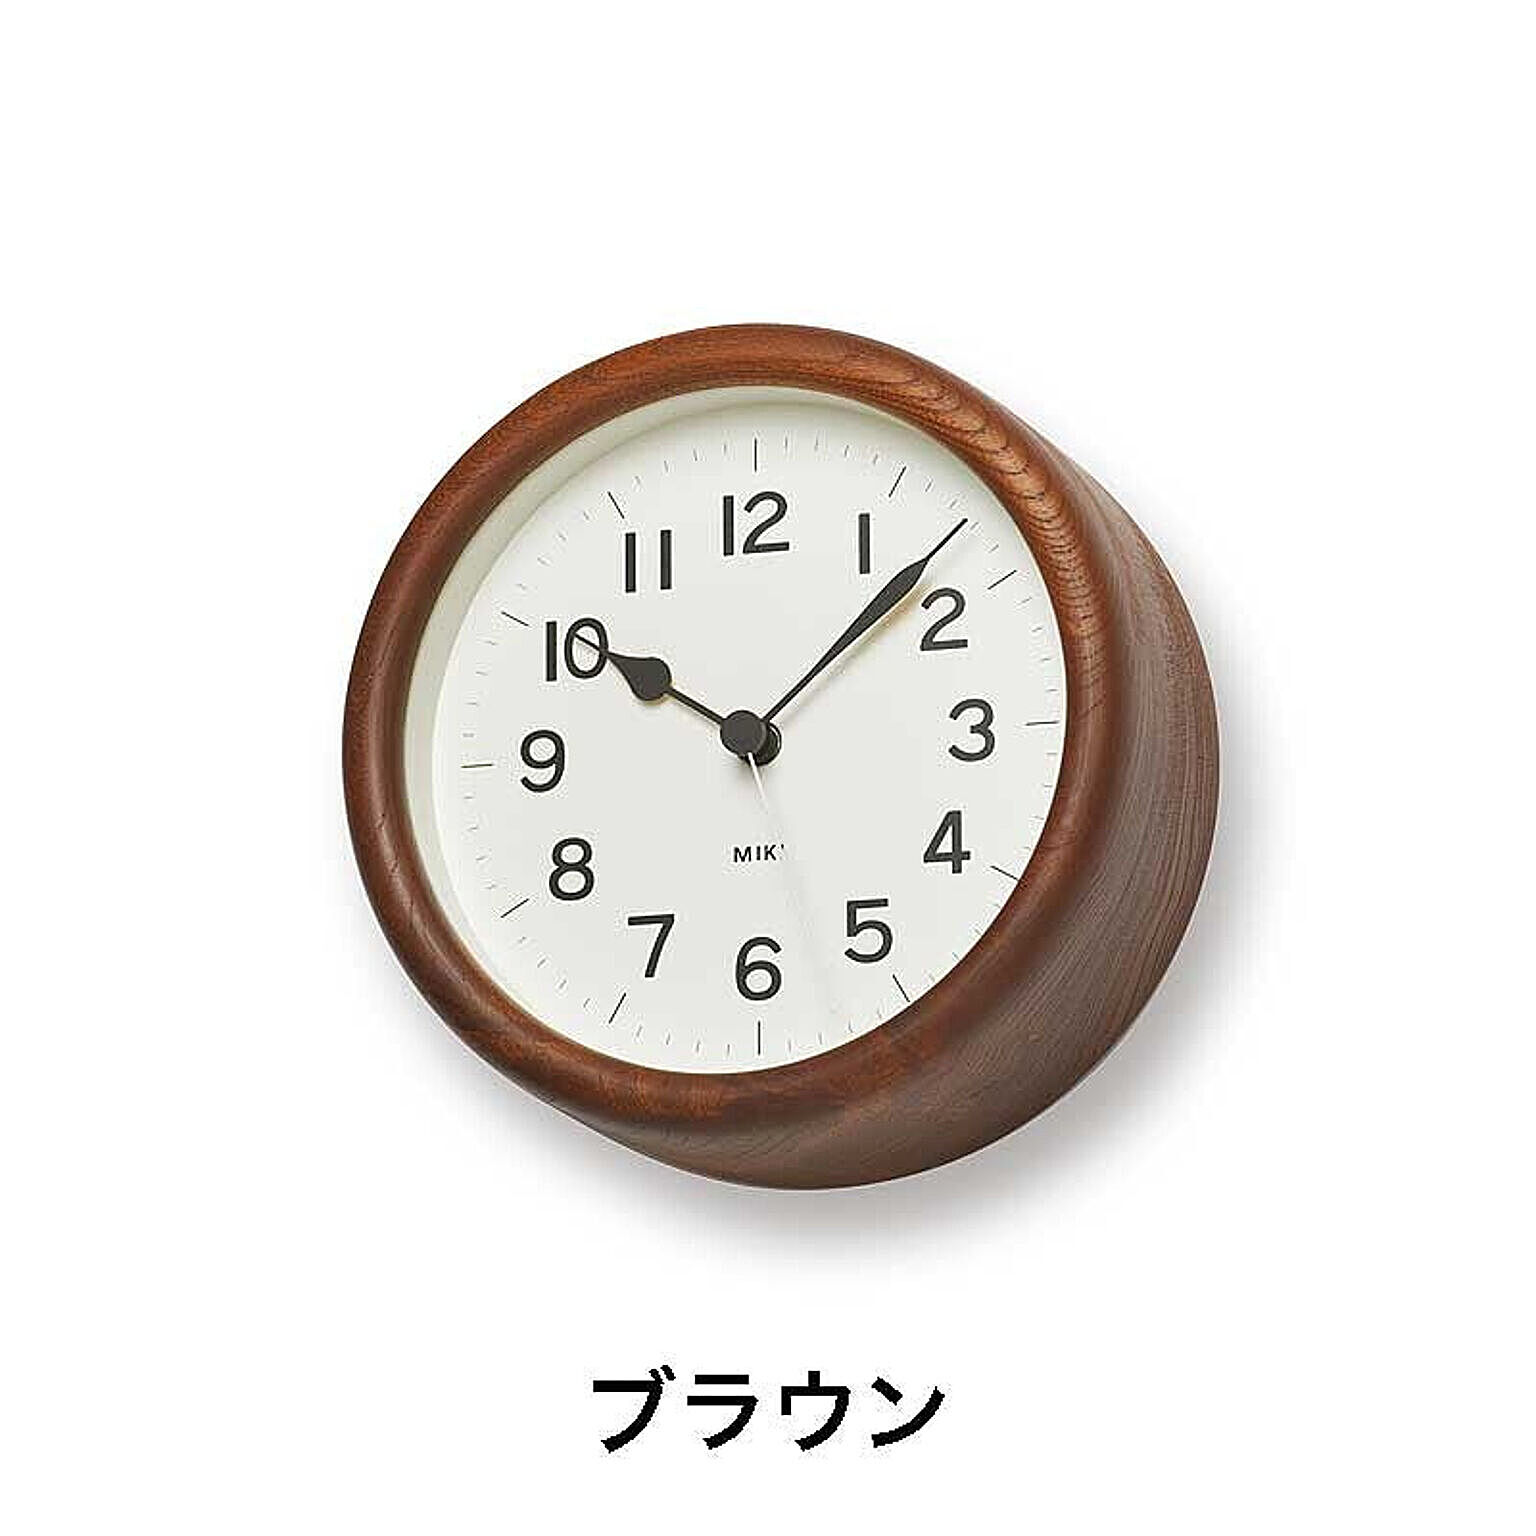 【Lemnos/レムノス】MIKI / ミキ-ケヤキの時計